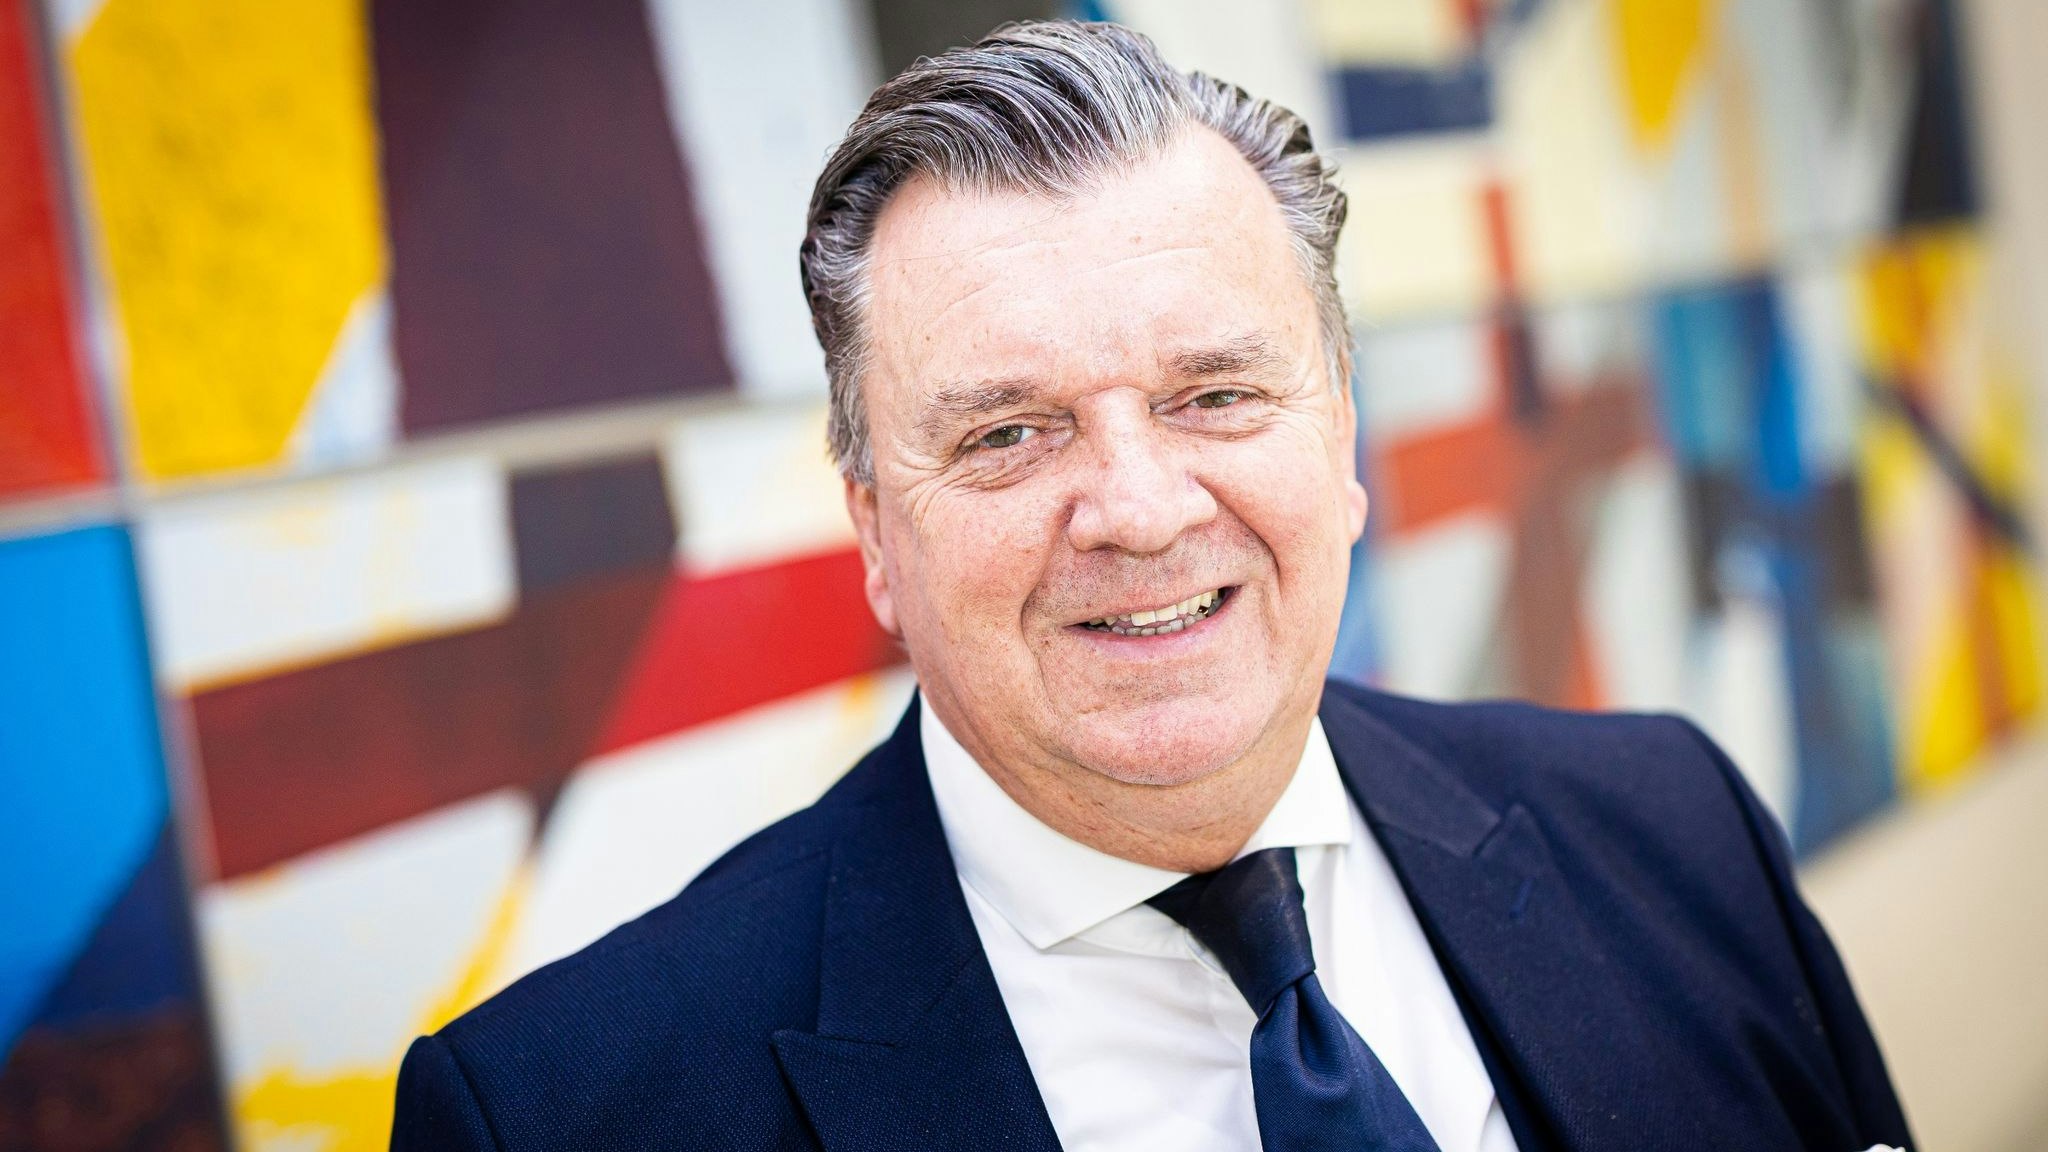 Uwe Dorendorf, Abgeordneter der CDU im Landtag Niedersachsen, lächelt. Foto: dpa/Frankenberg